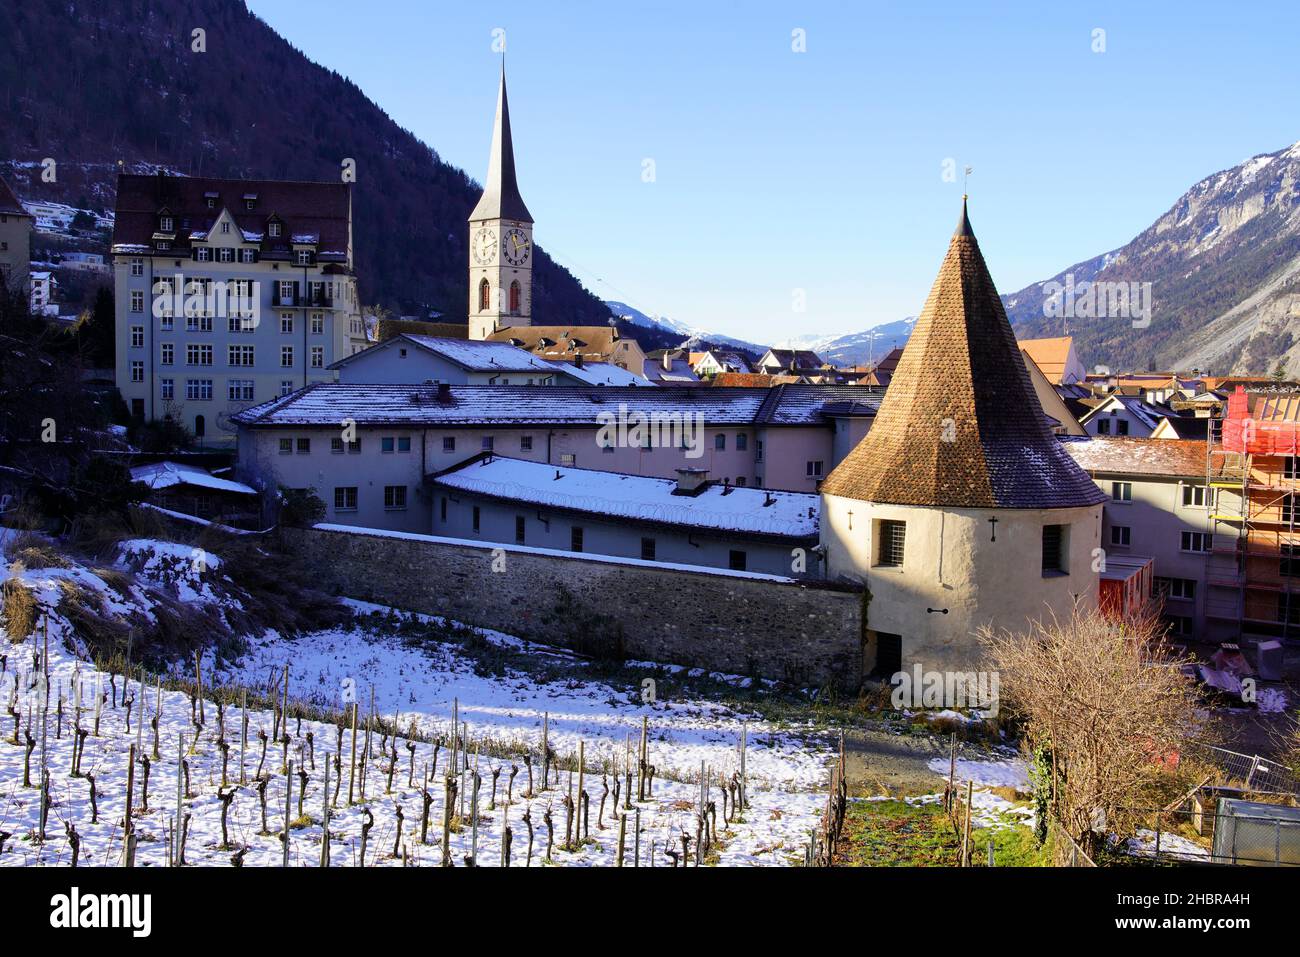 Vue imprenable sur la vieille ville de Chur dans les Alpes suisses.Canton des Grisons (Grisons), S witzerland. Banque D'Images